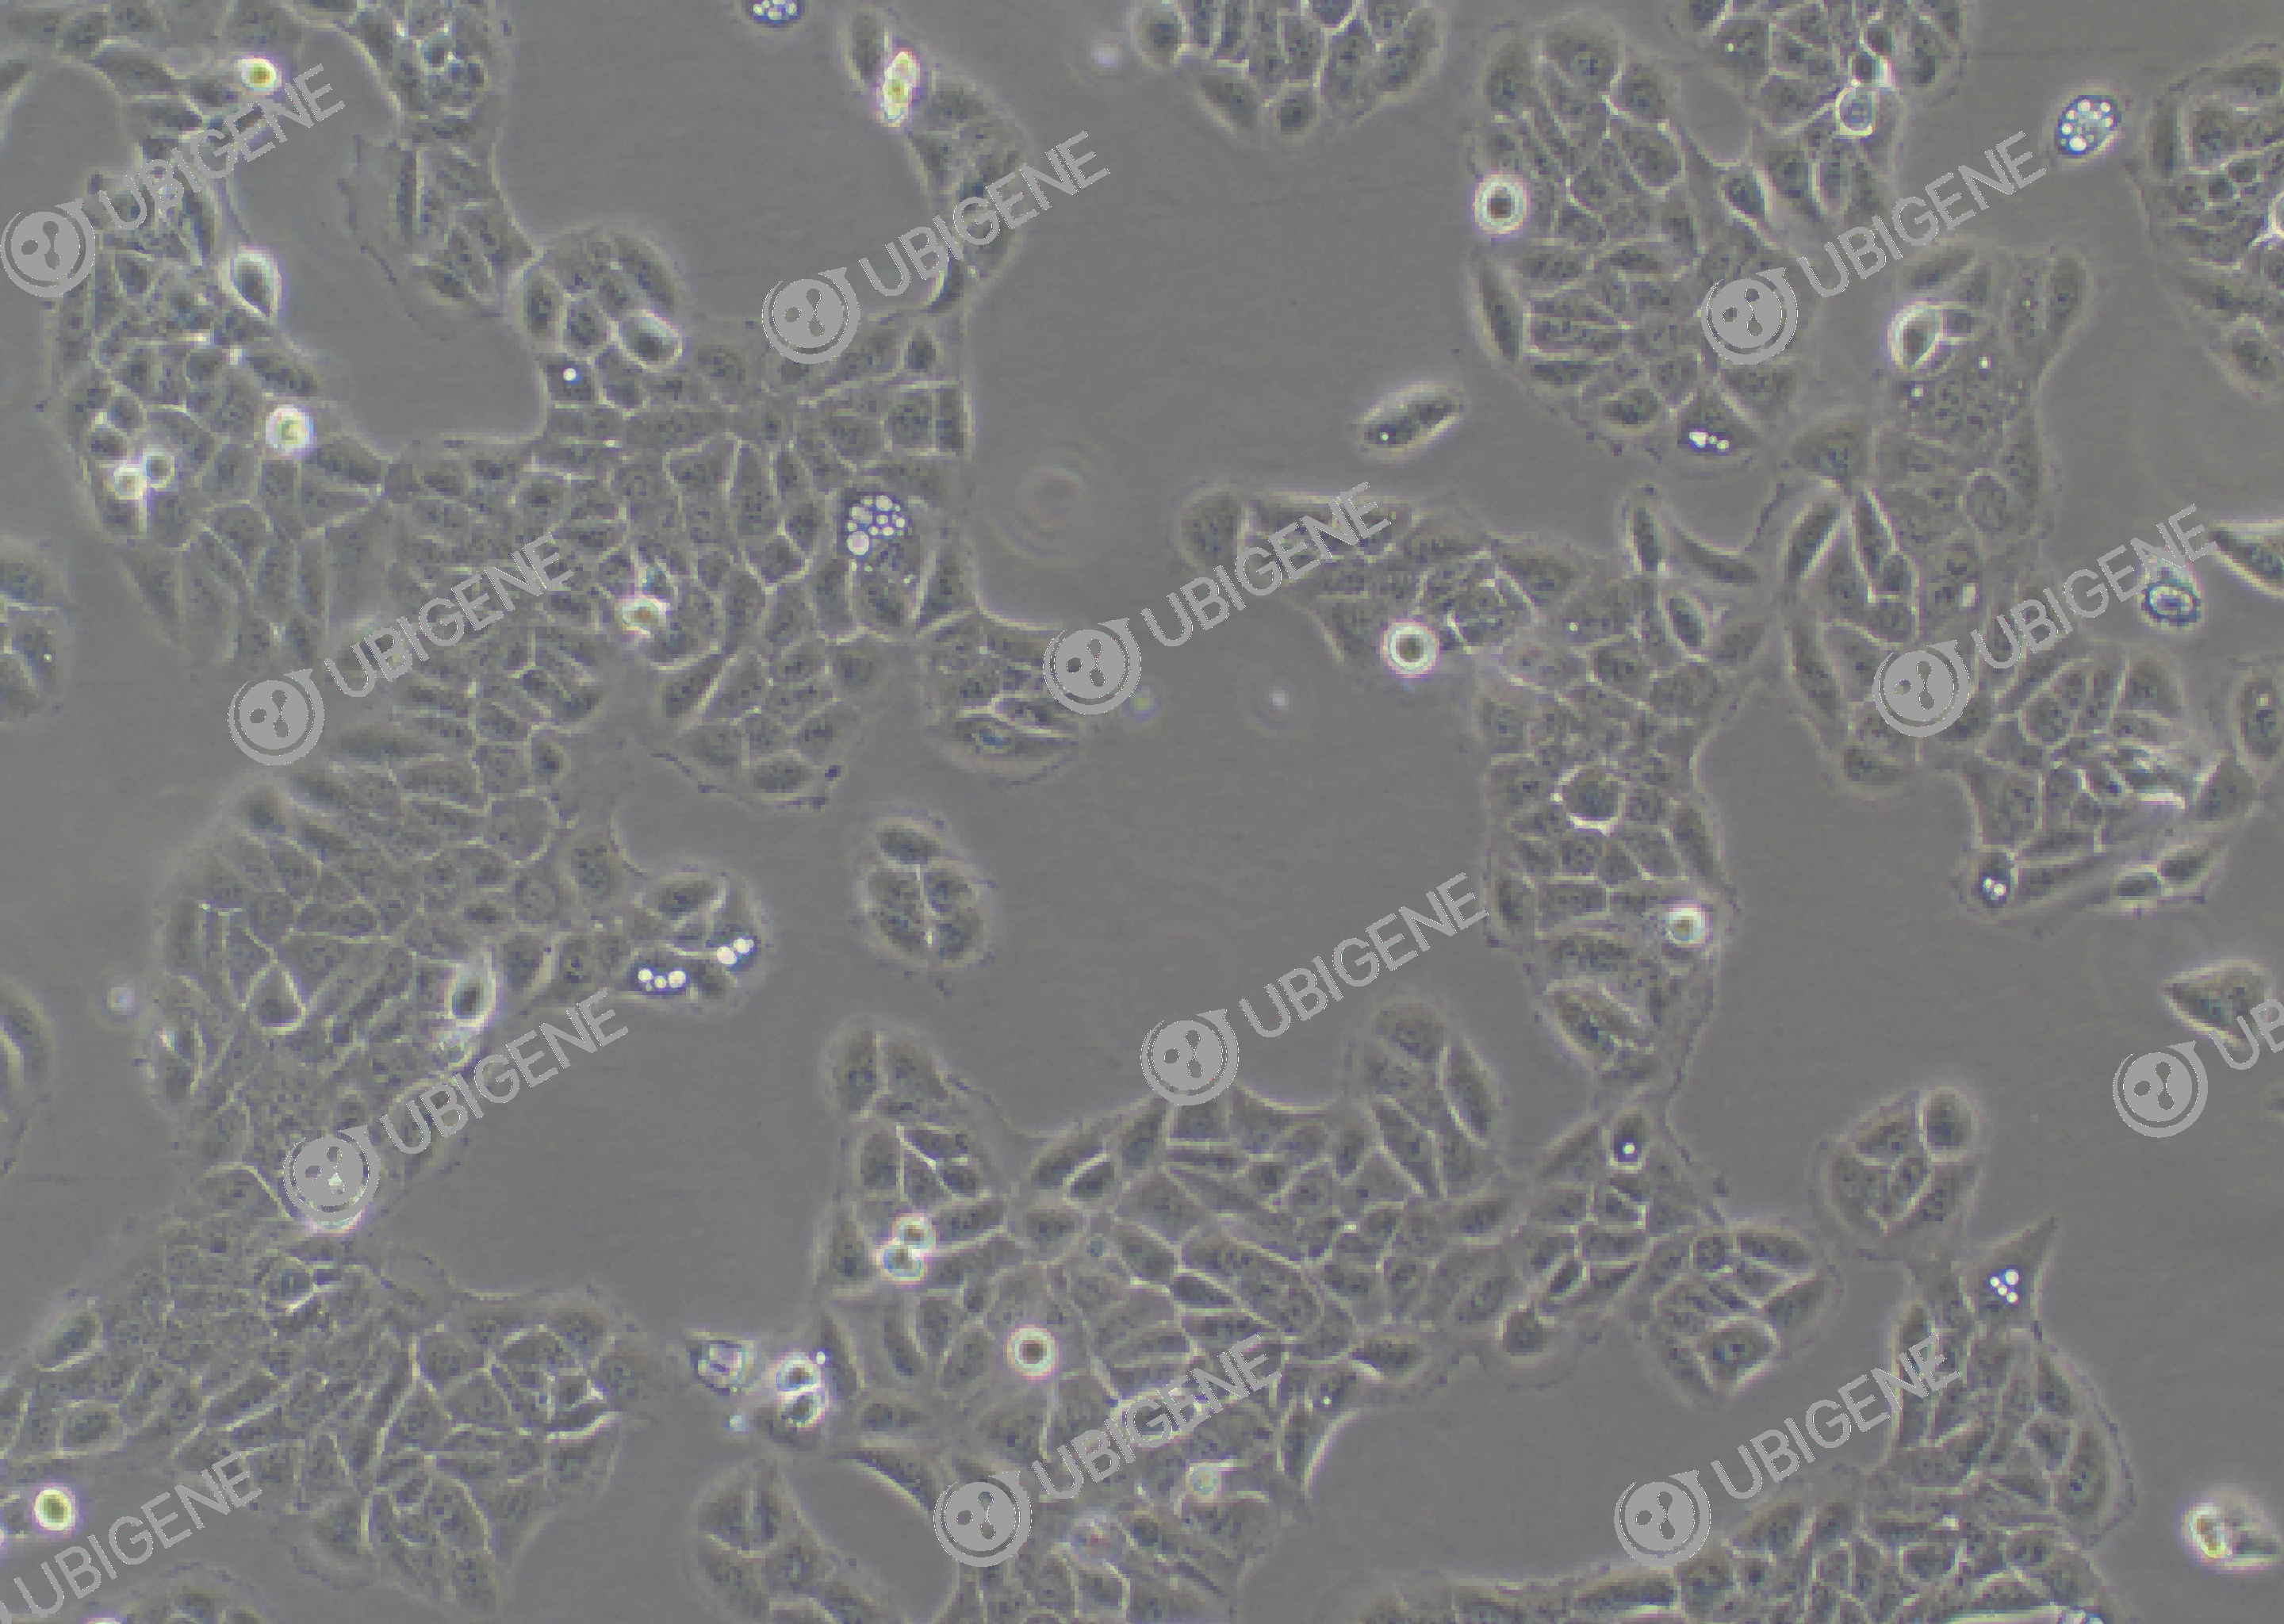 人永生化角质细胞(HaCaT)细胞形态培养图